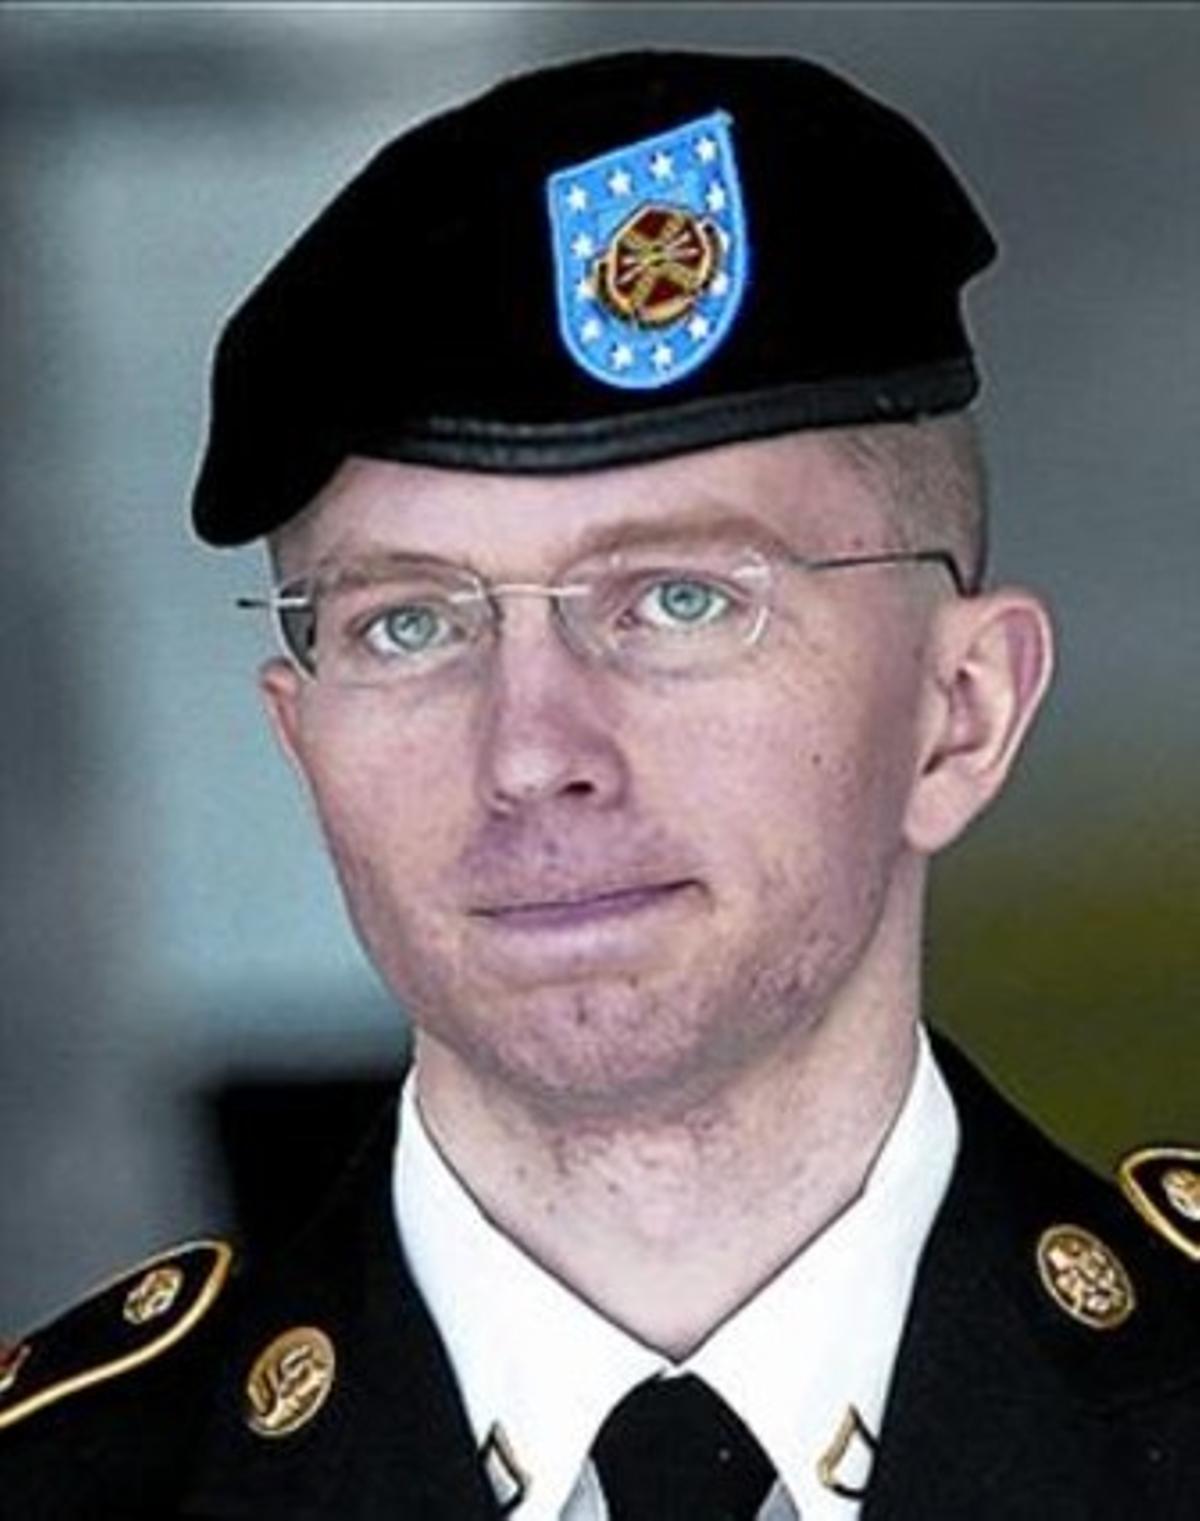 Identitat trastornada 8 Manning, de dona, i uniformat.